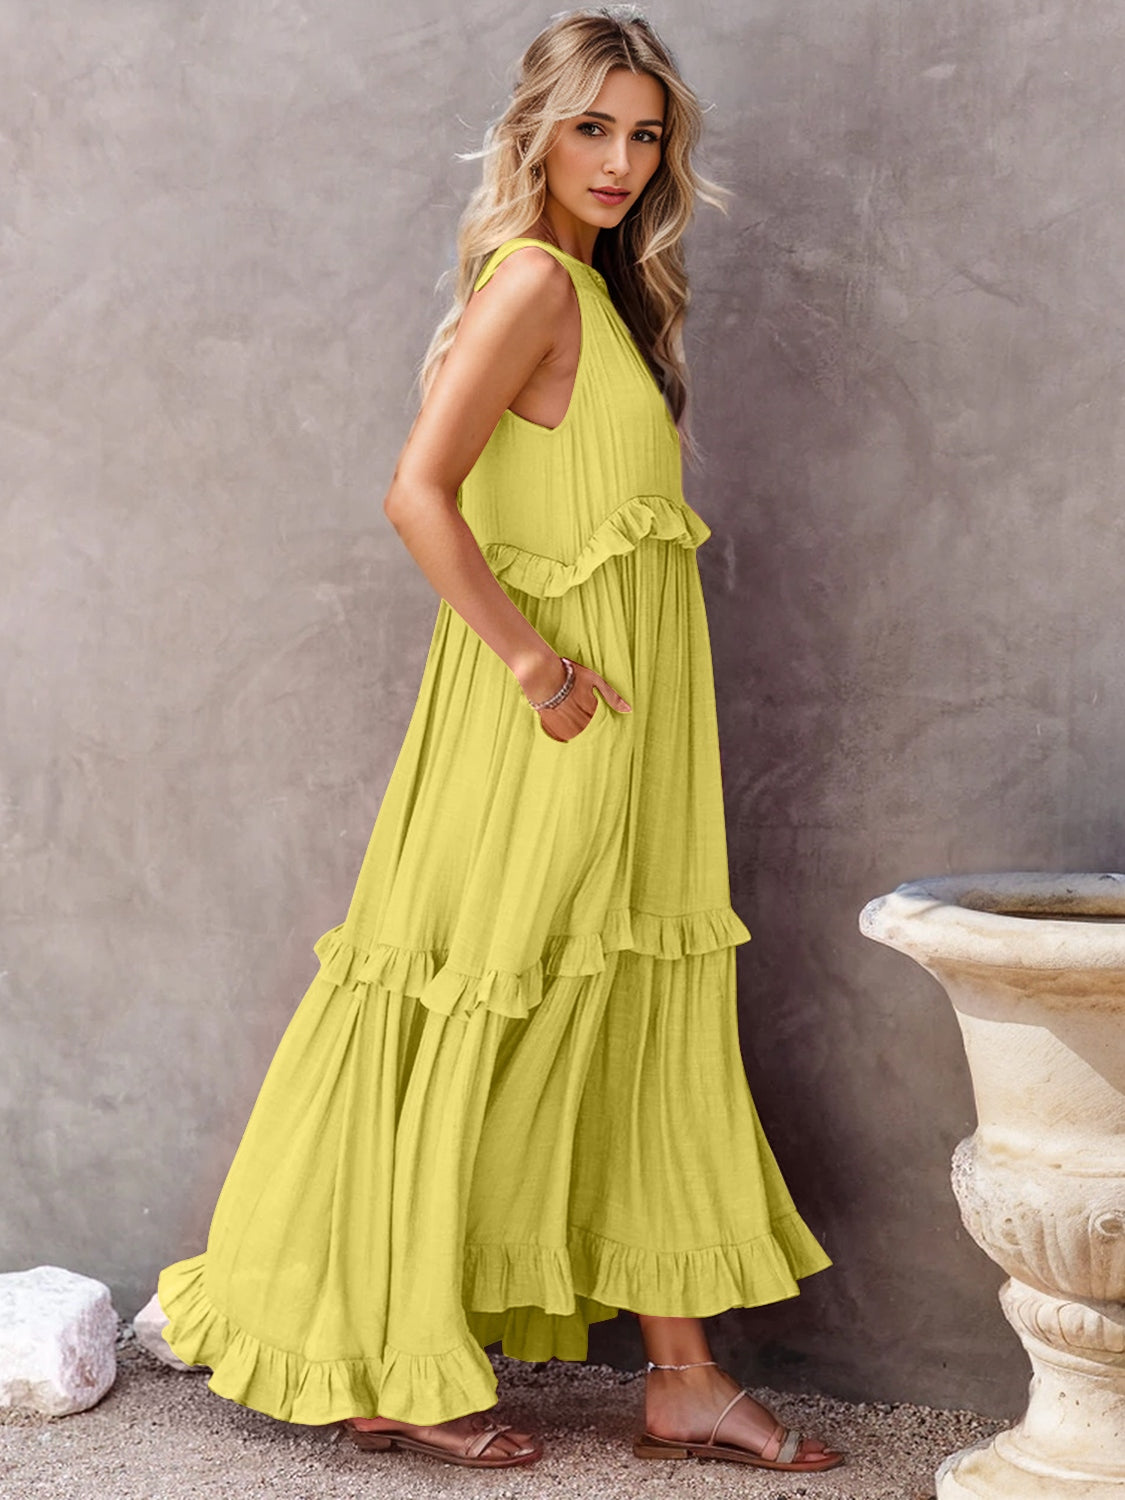 Ruffled Sleeveless Maxi Dress with Pockets | Lootario - Lootario